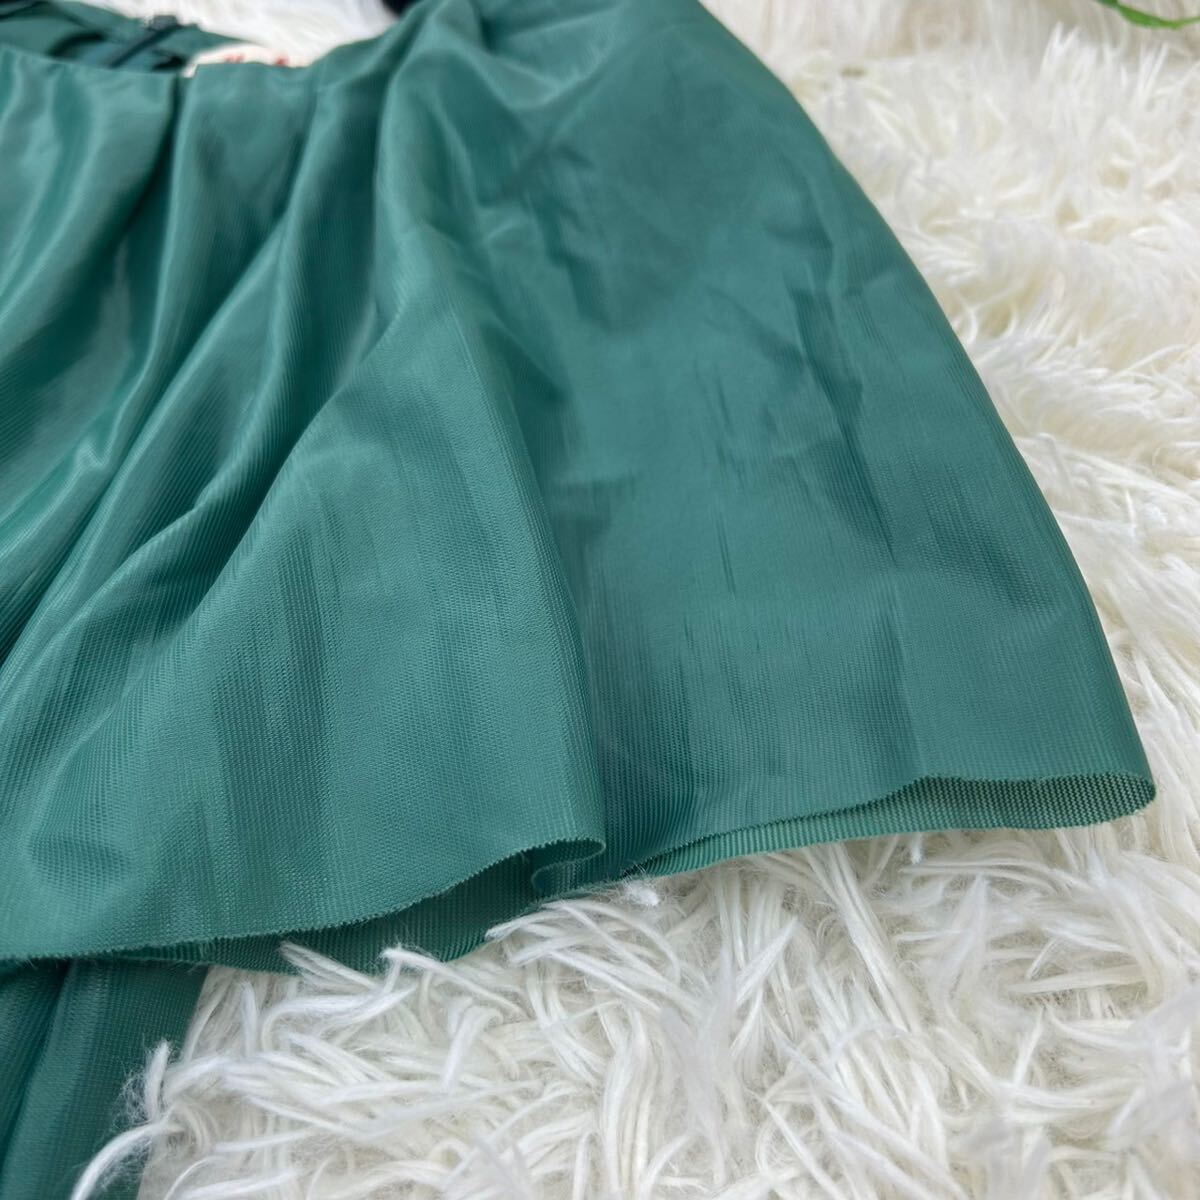 MARNI マルニ レディース Mサイズ 緑 グリーン ワンピース 膝丈 半袖 薄手 タイトスカート 光沢感 シースルー 美品 未使用に近い 送料無料の画像10